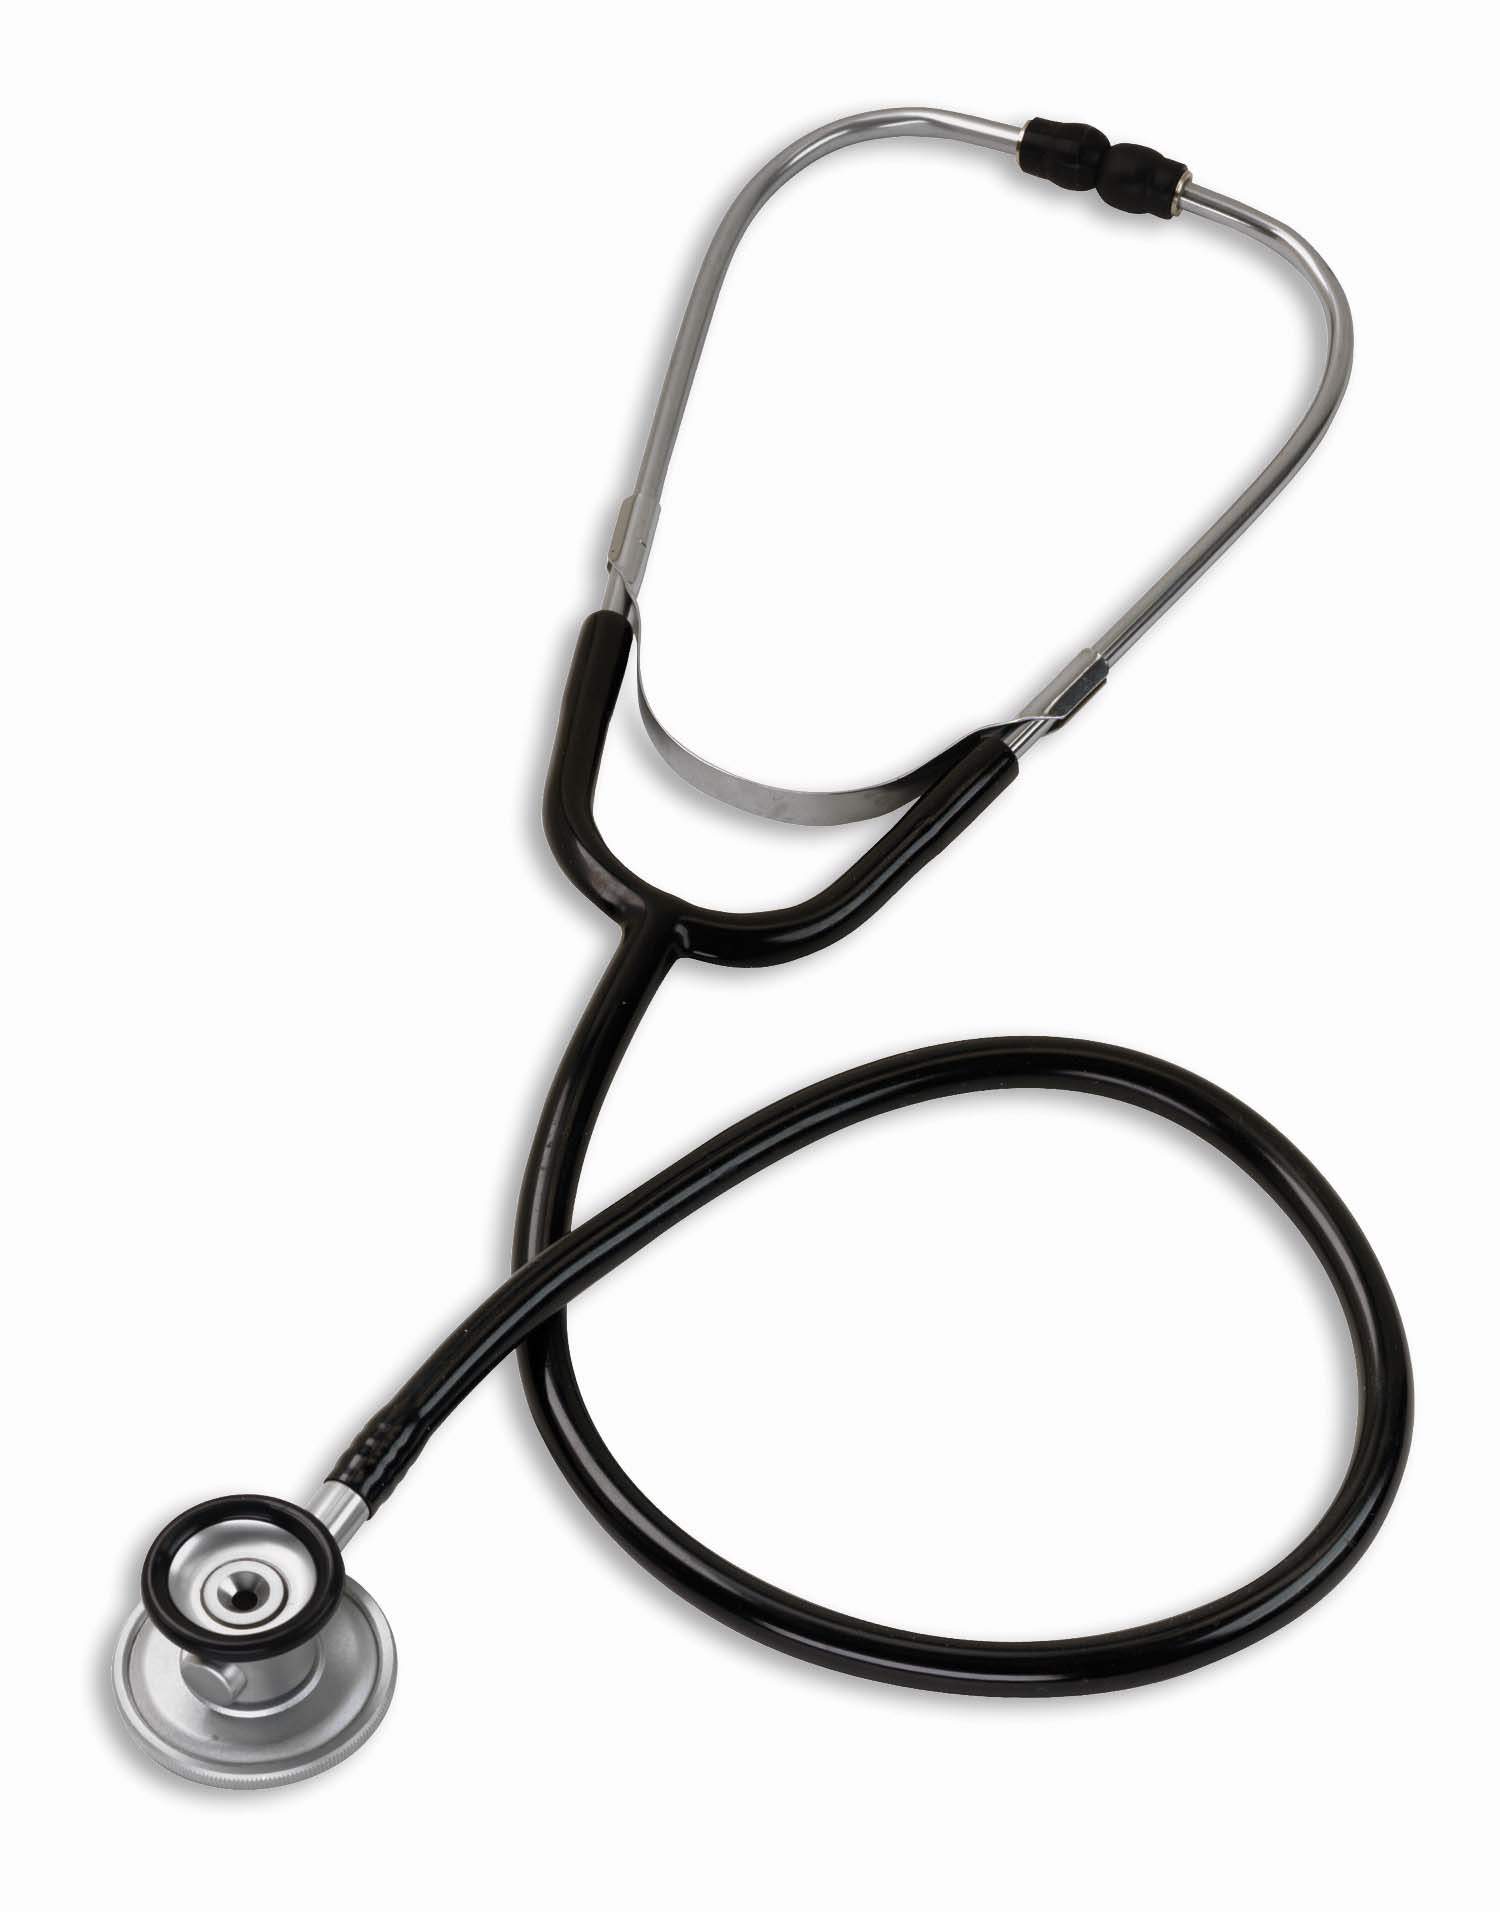 7 Best Stethoscope for Nurses 2018 | Medical Equipment